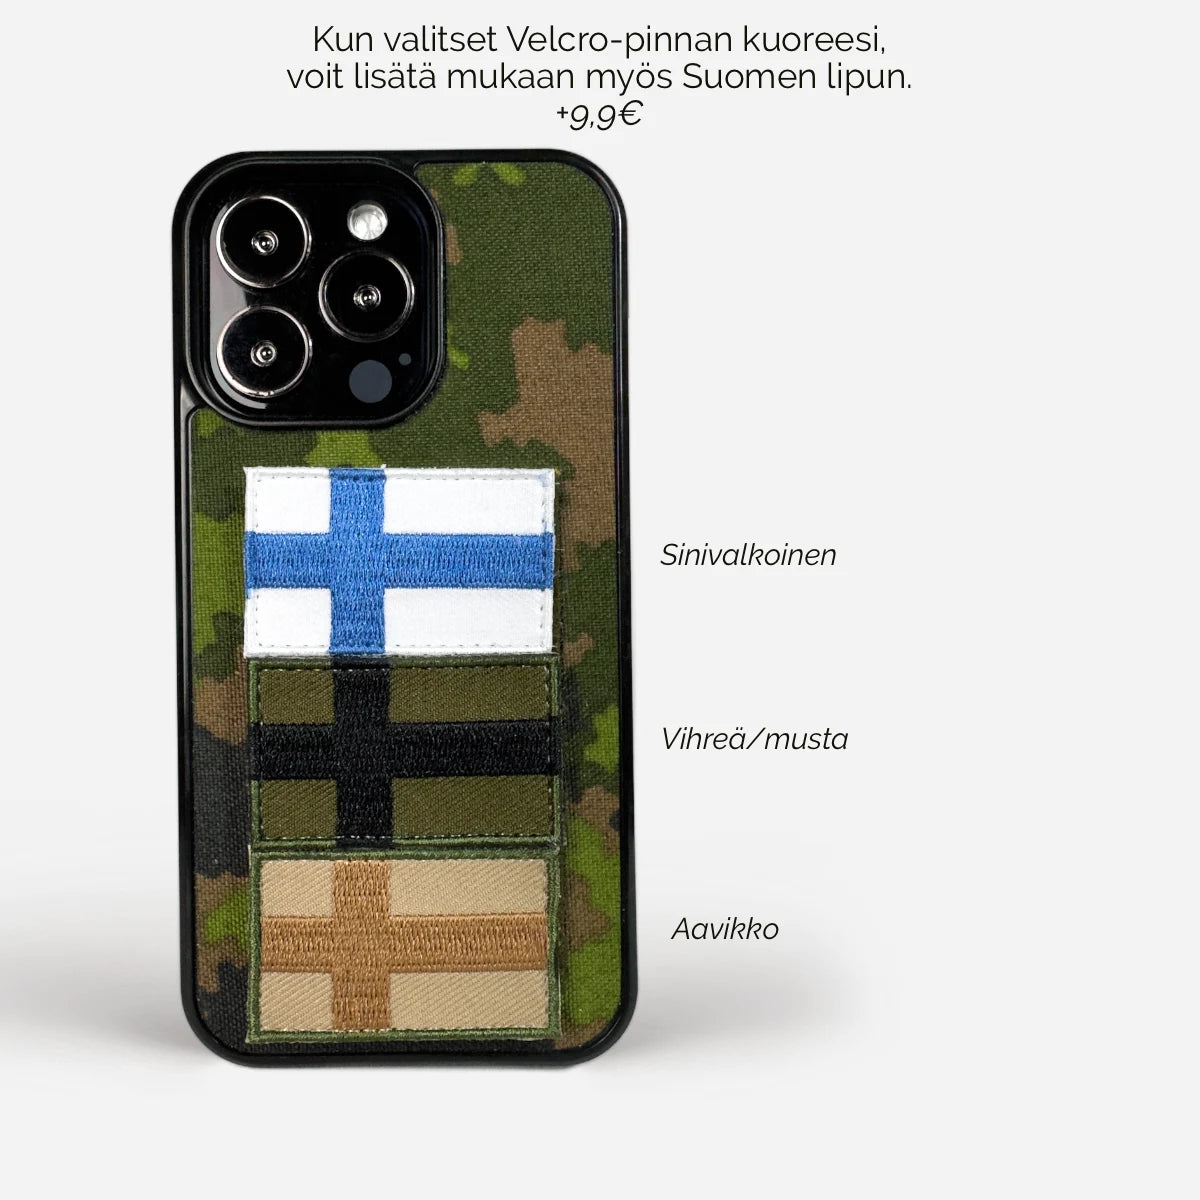 Suomalainen armeijan kännykkäkuori - M05, aitoa M05-kamuflaagikangasta ja iskunkestävää muovia. Suunniteltu suojaamaan laitettasi täydellisesti, tar-logo koivusta. Ei myrkyllisiä aineita valmistuksessa. Maailmanlaajuinen toimitus.